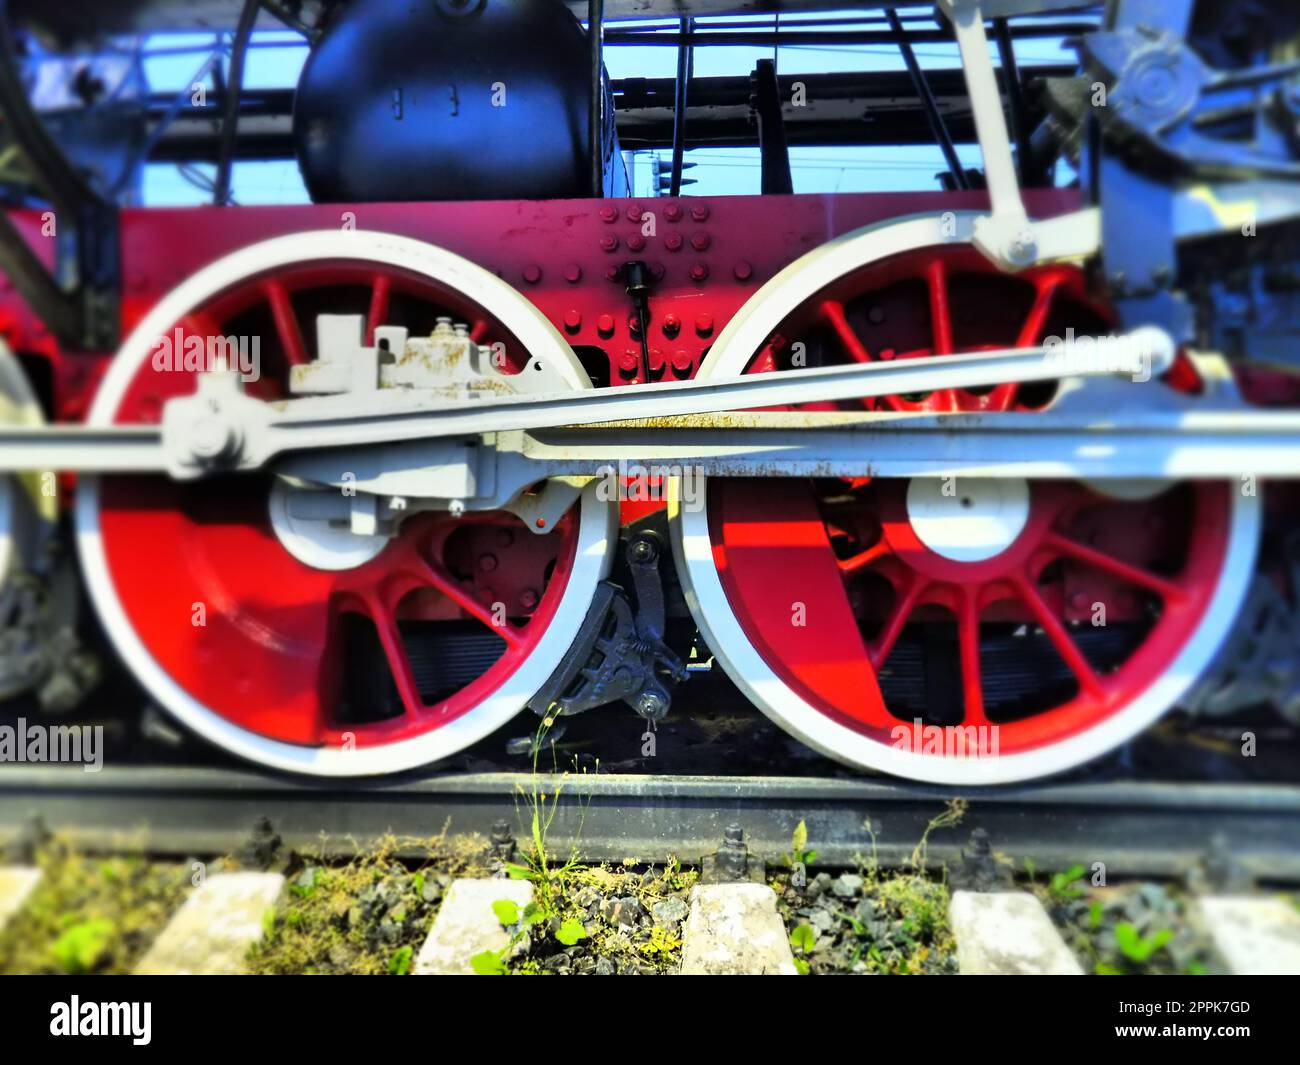 Roues rétro vintage d'une locomotive ou d'un train en gros plan. Grandes roues rouges en métal lourd avec mécanismes de guidage de piston. Locomotive des 19e - 20e siècles avec une machine à vapeur. Photo éclatante et éclatante Banque D'Images